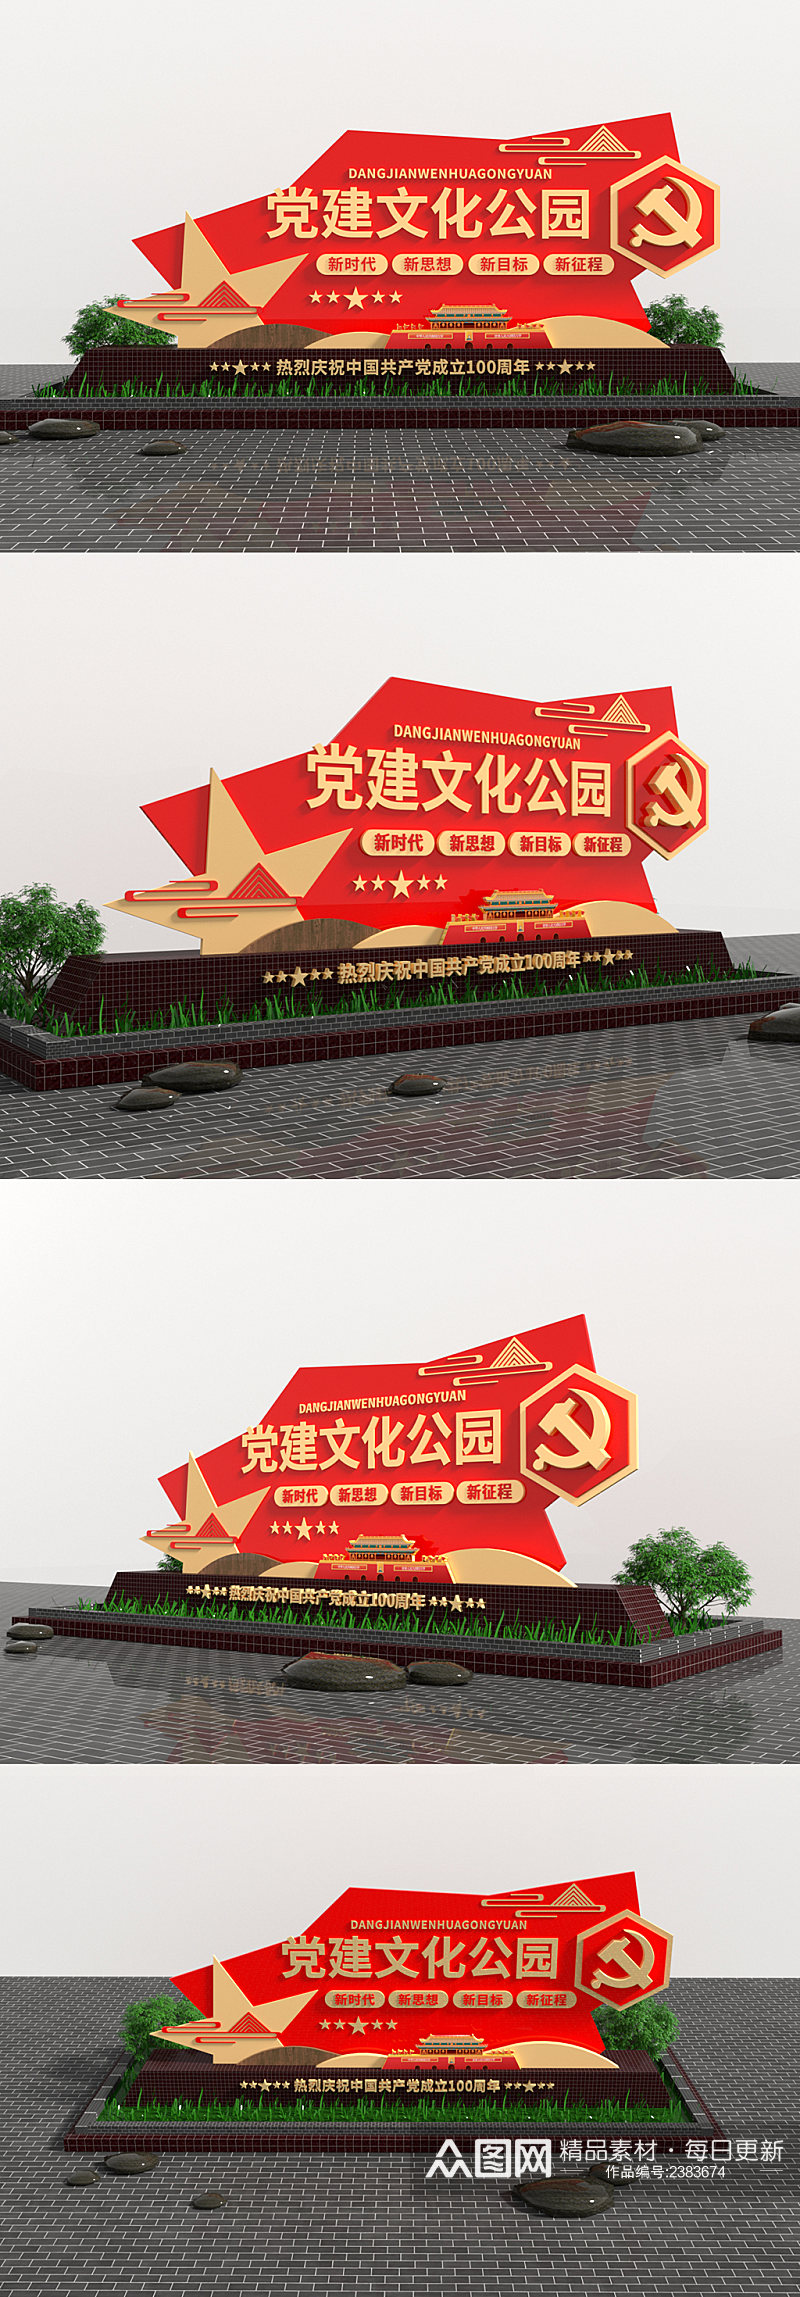 党建文化公园红色旅游景区精神堡垒户外雕塑素材